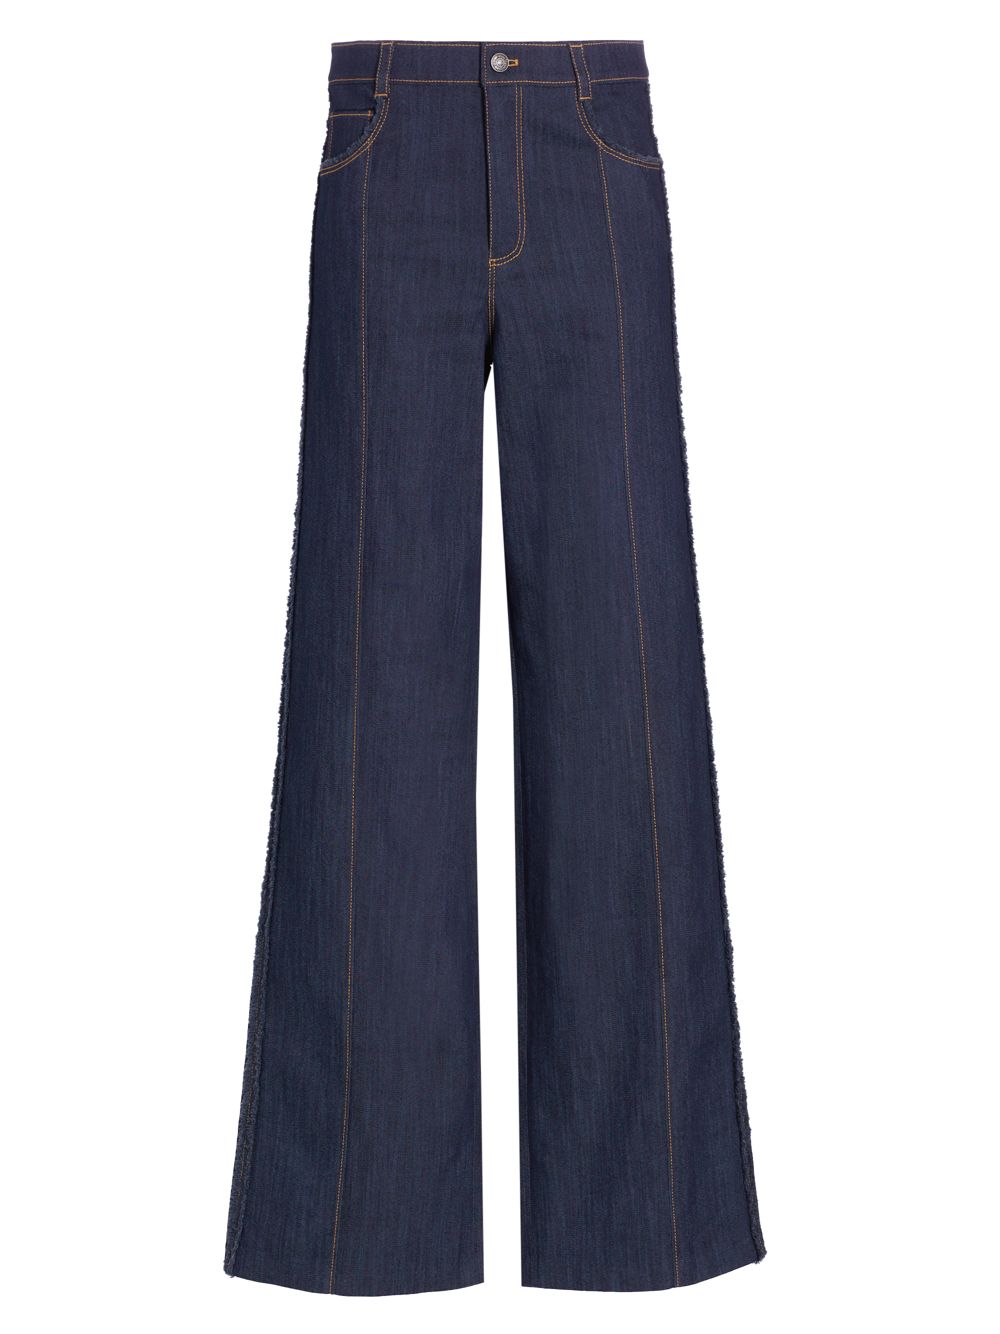 Эластичные прямые джинсы Francine с высокой посадкой Cinq à Sept, индиго